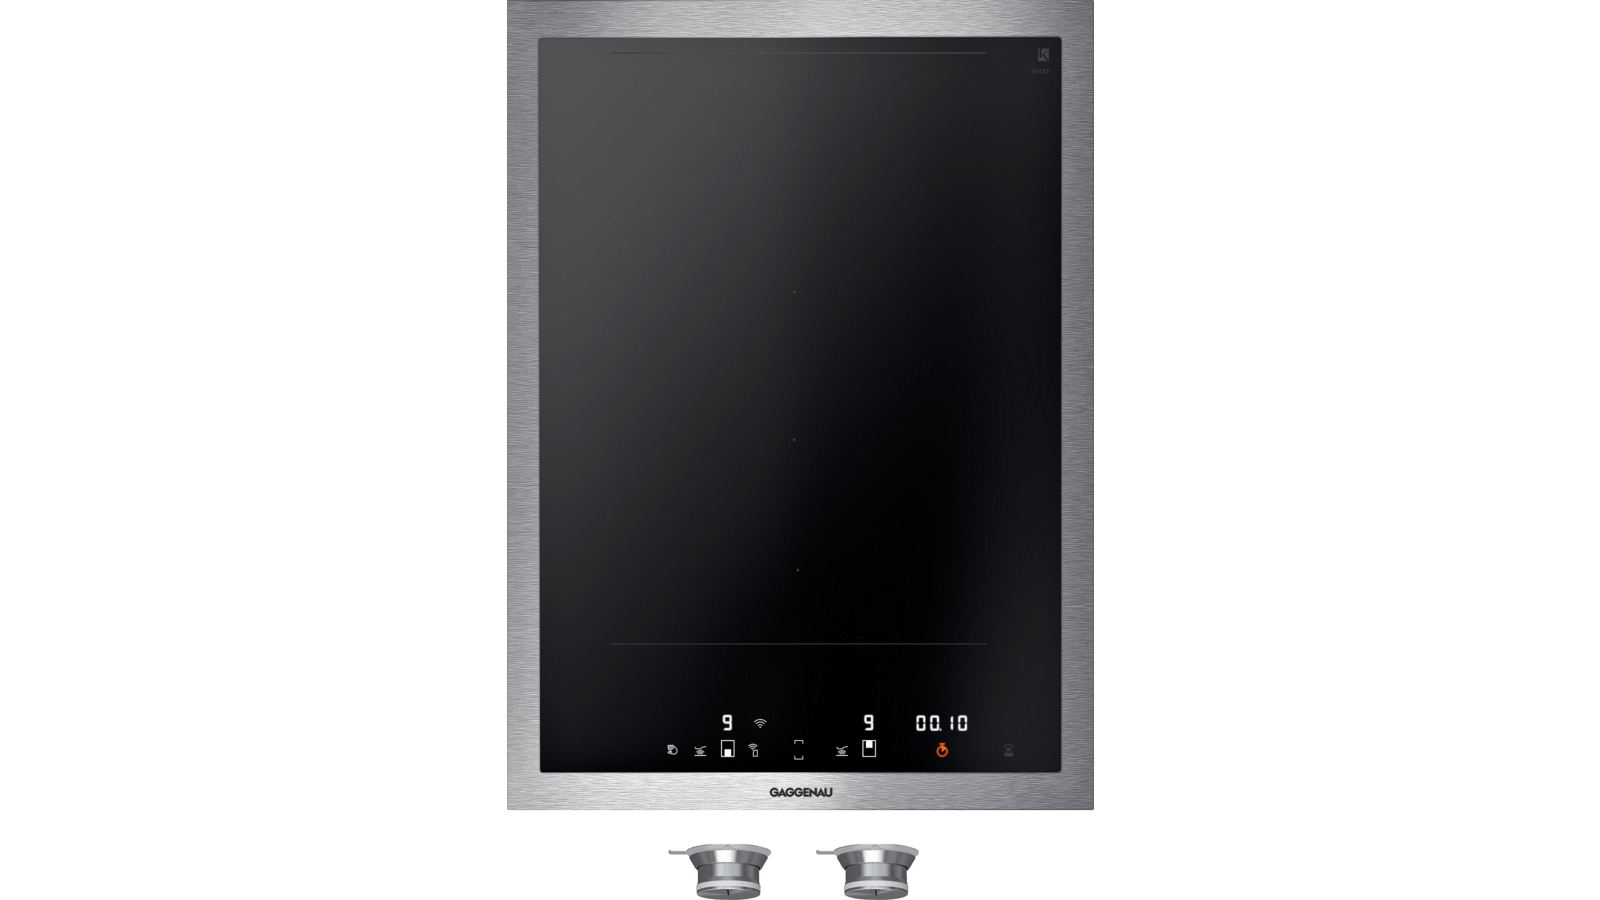 VI422613 Vario flex induction cooktop | GAGGENAU CA